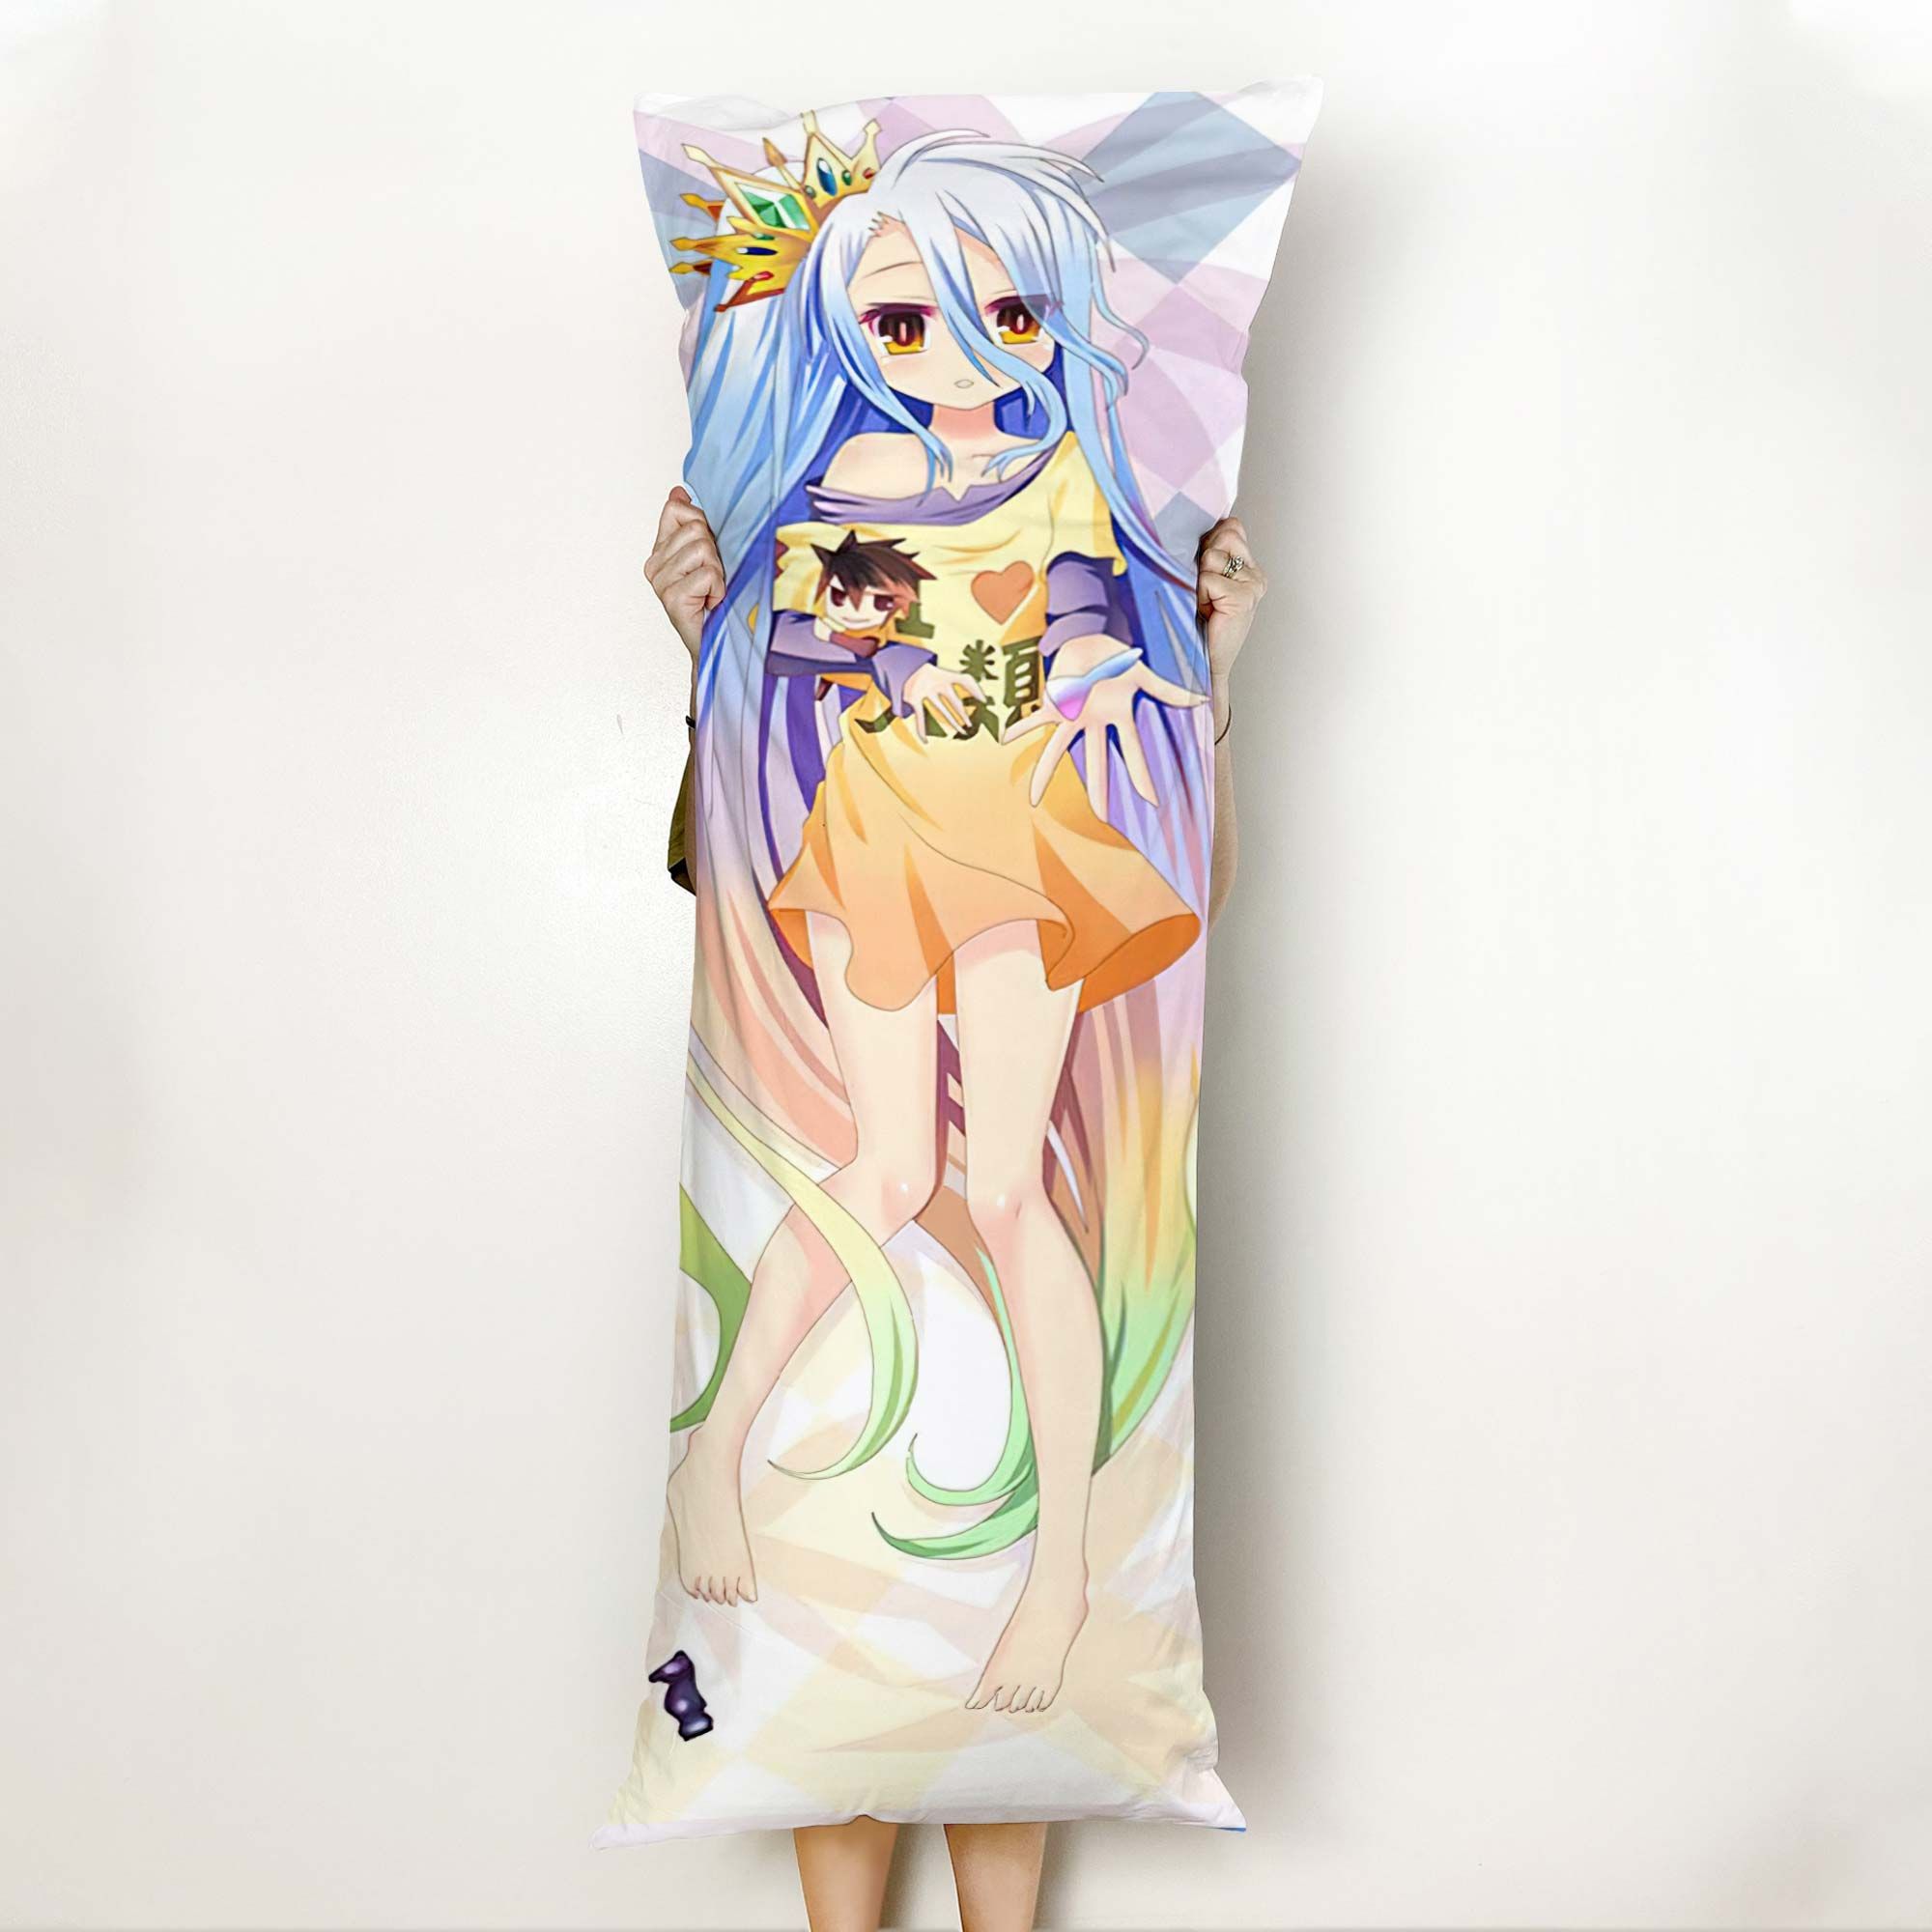 No Game No Life Shiro Body Pillow Cover Anime Gifts Idea For Otaku Girl Official Merch GO0110